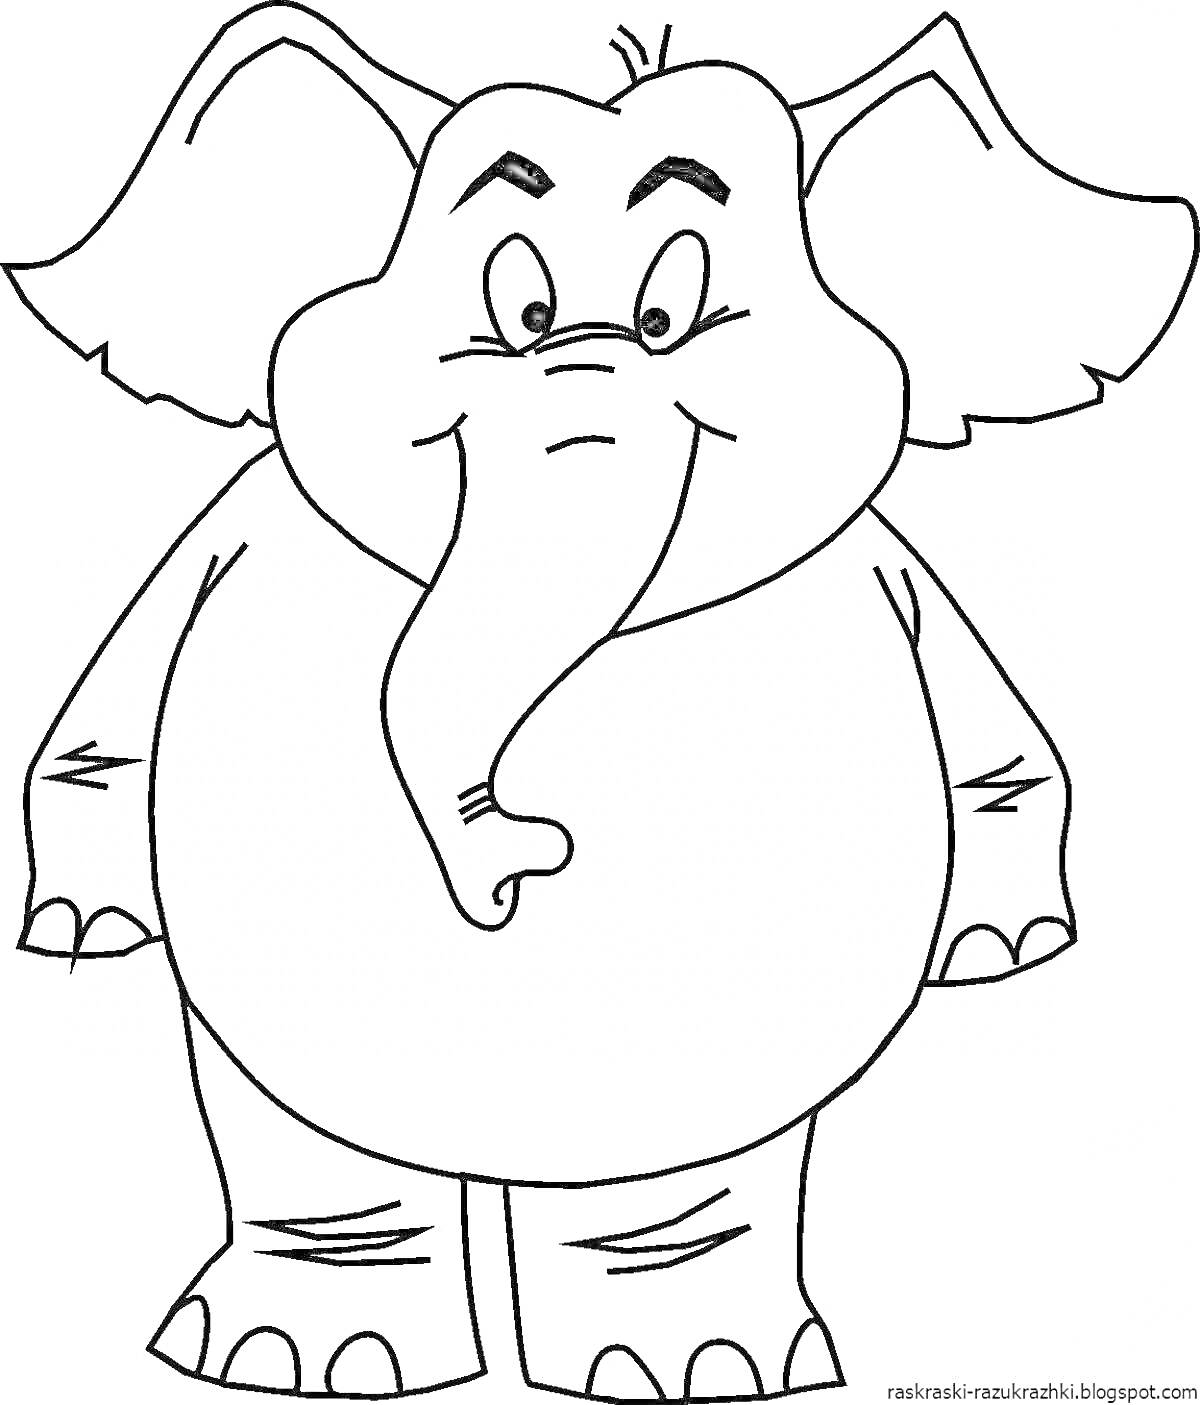 Раскраска Слон, стоящий на задних лапах